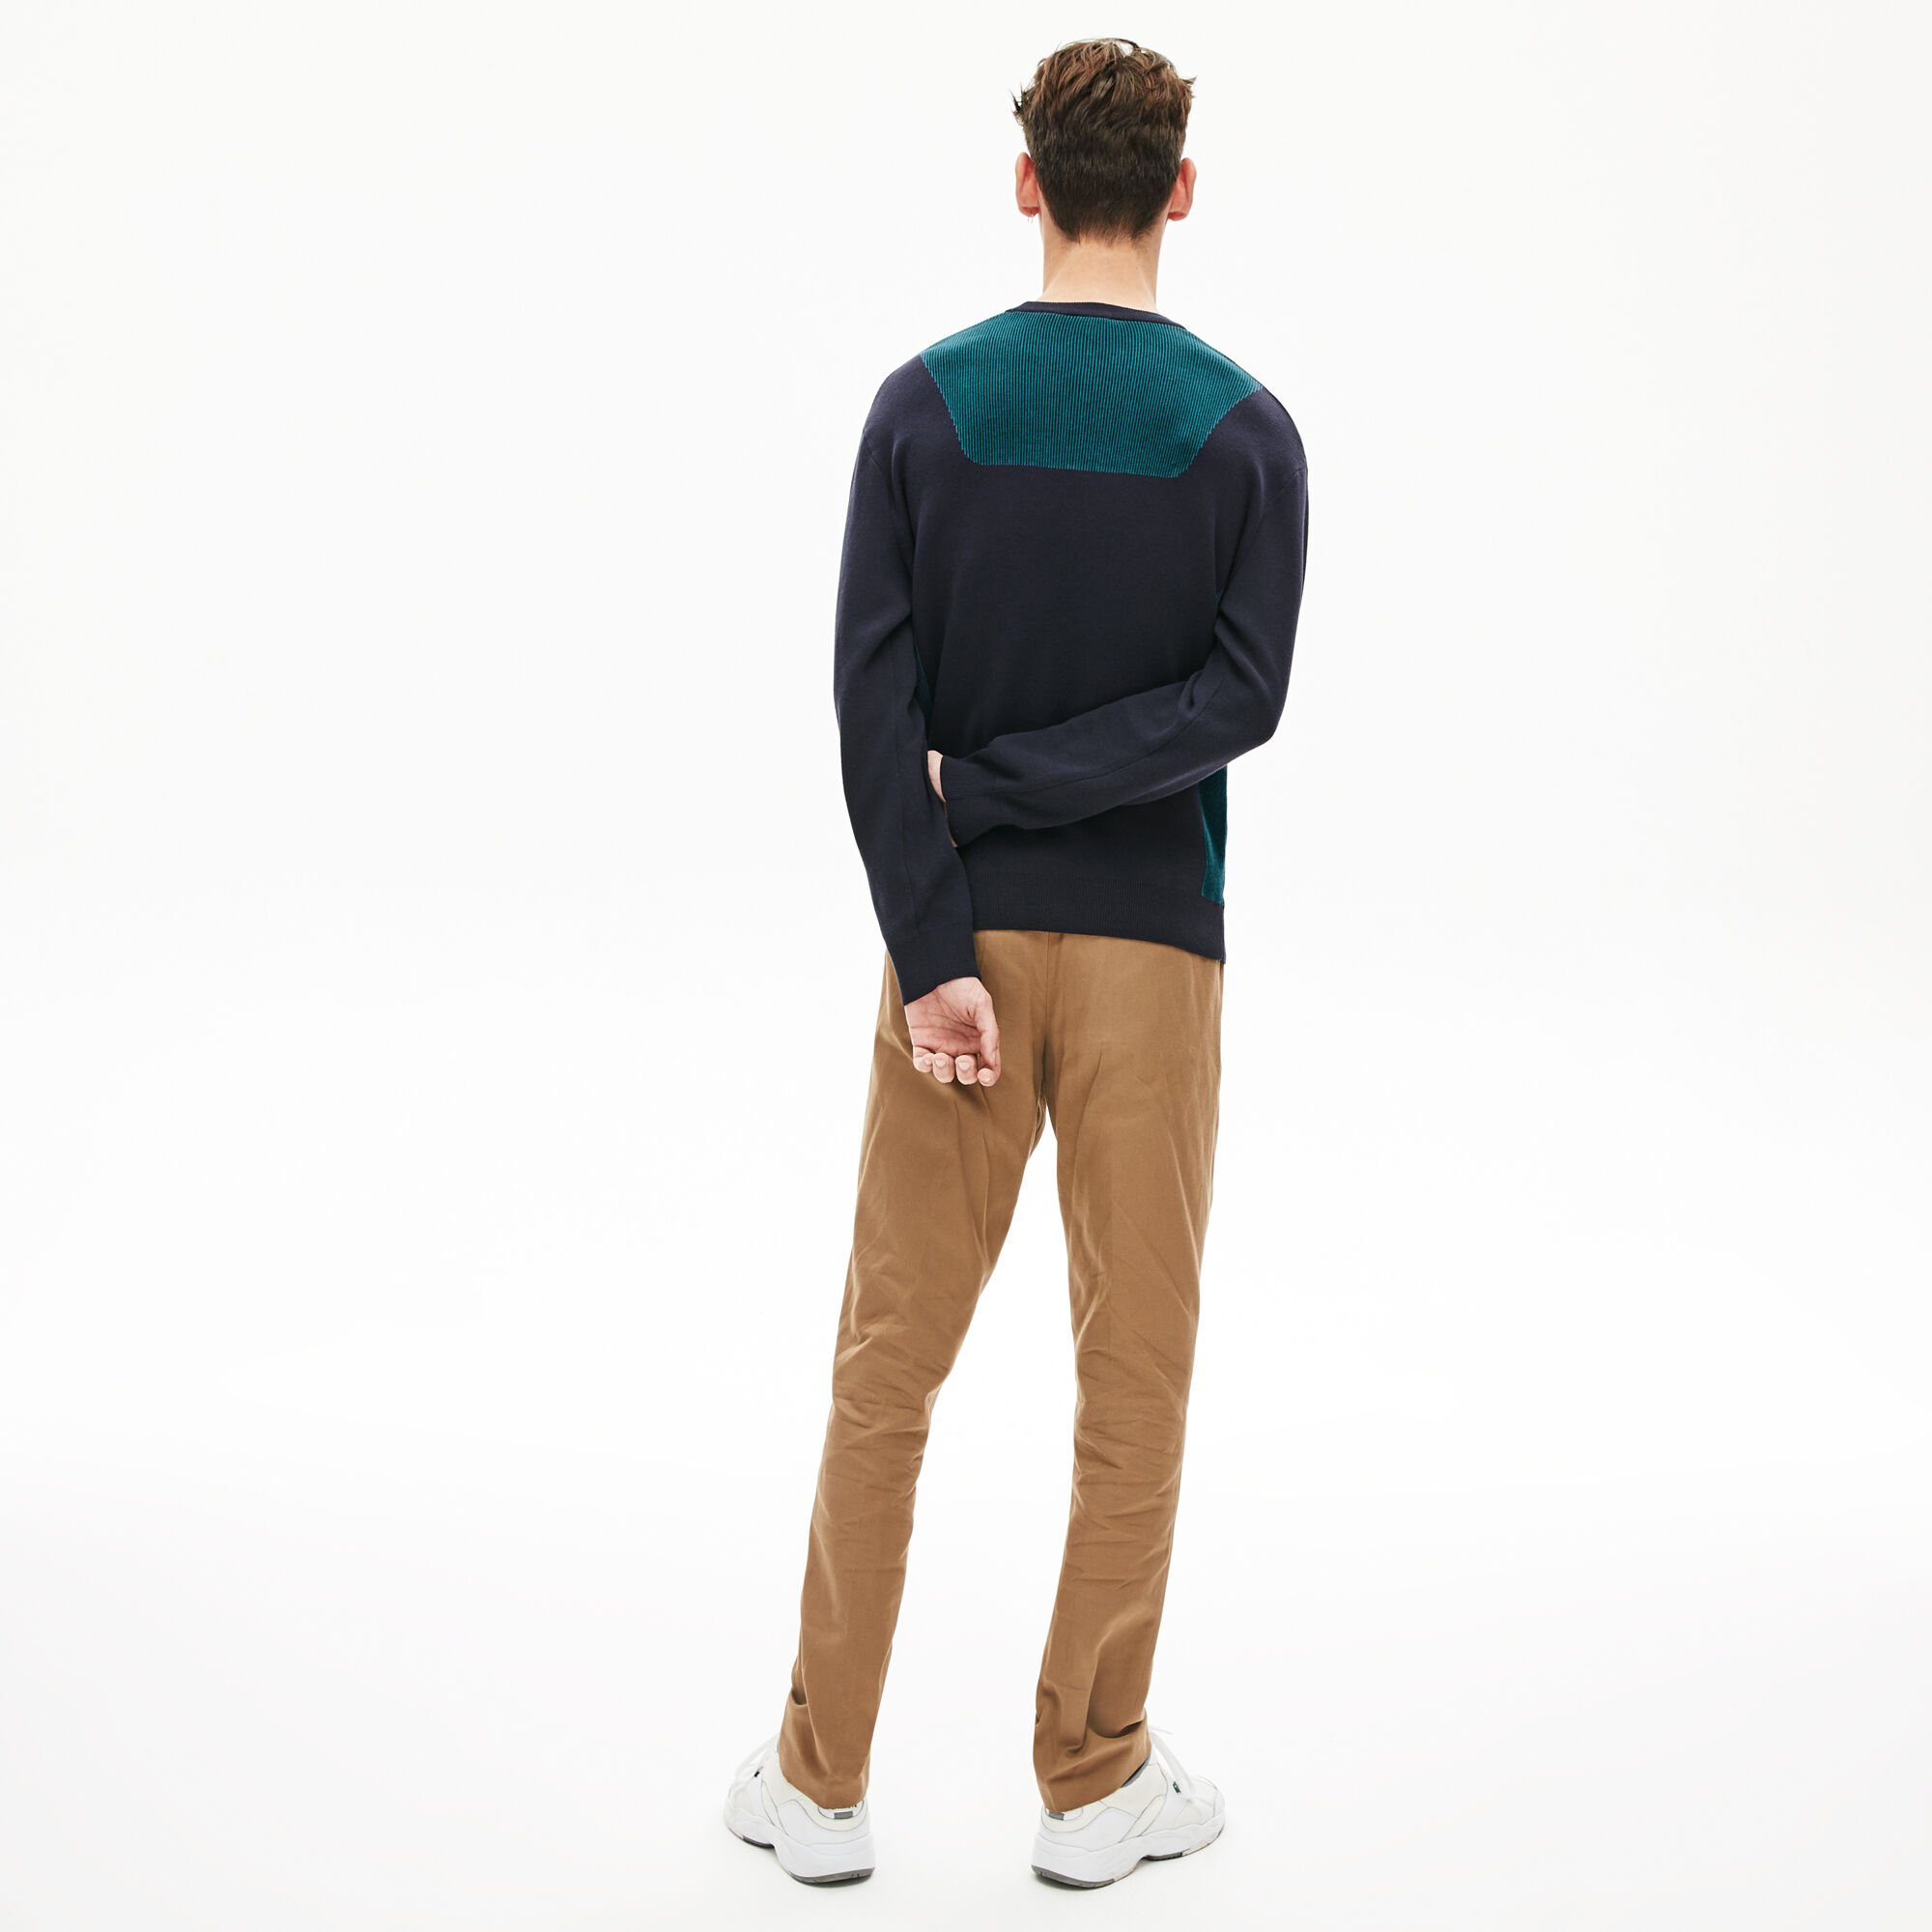 Men's Contrast Effects Knit Sweater